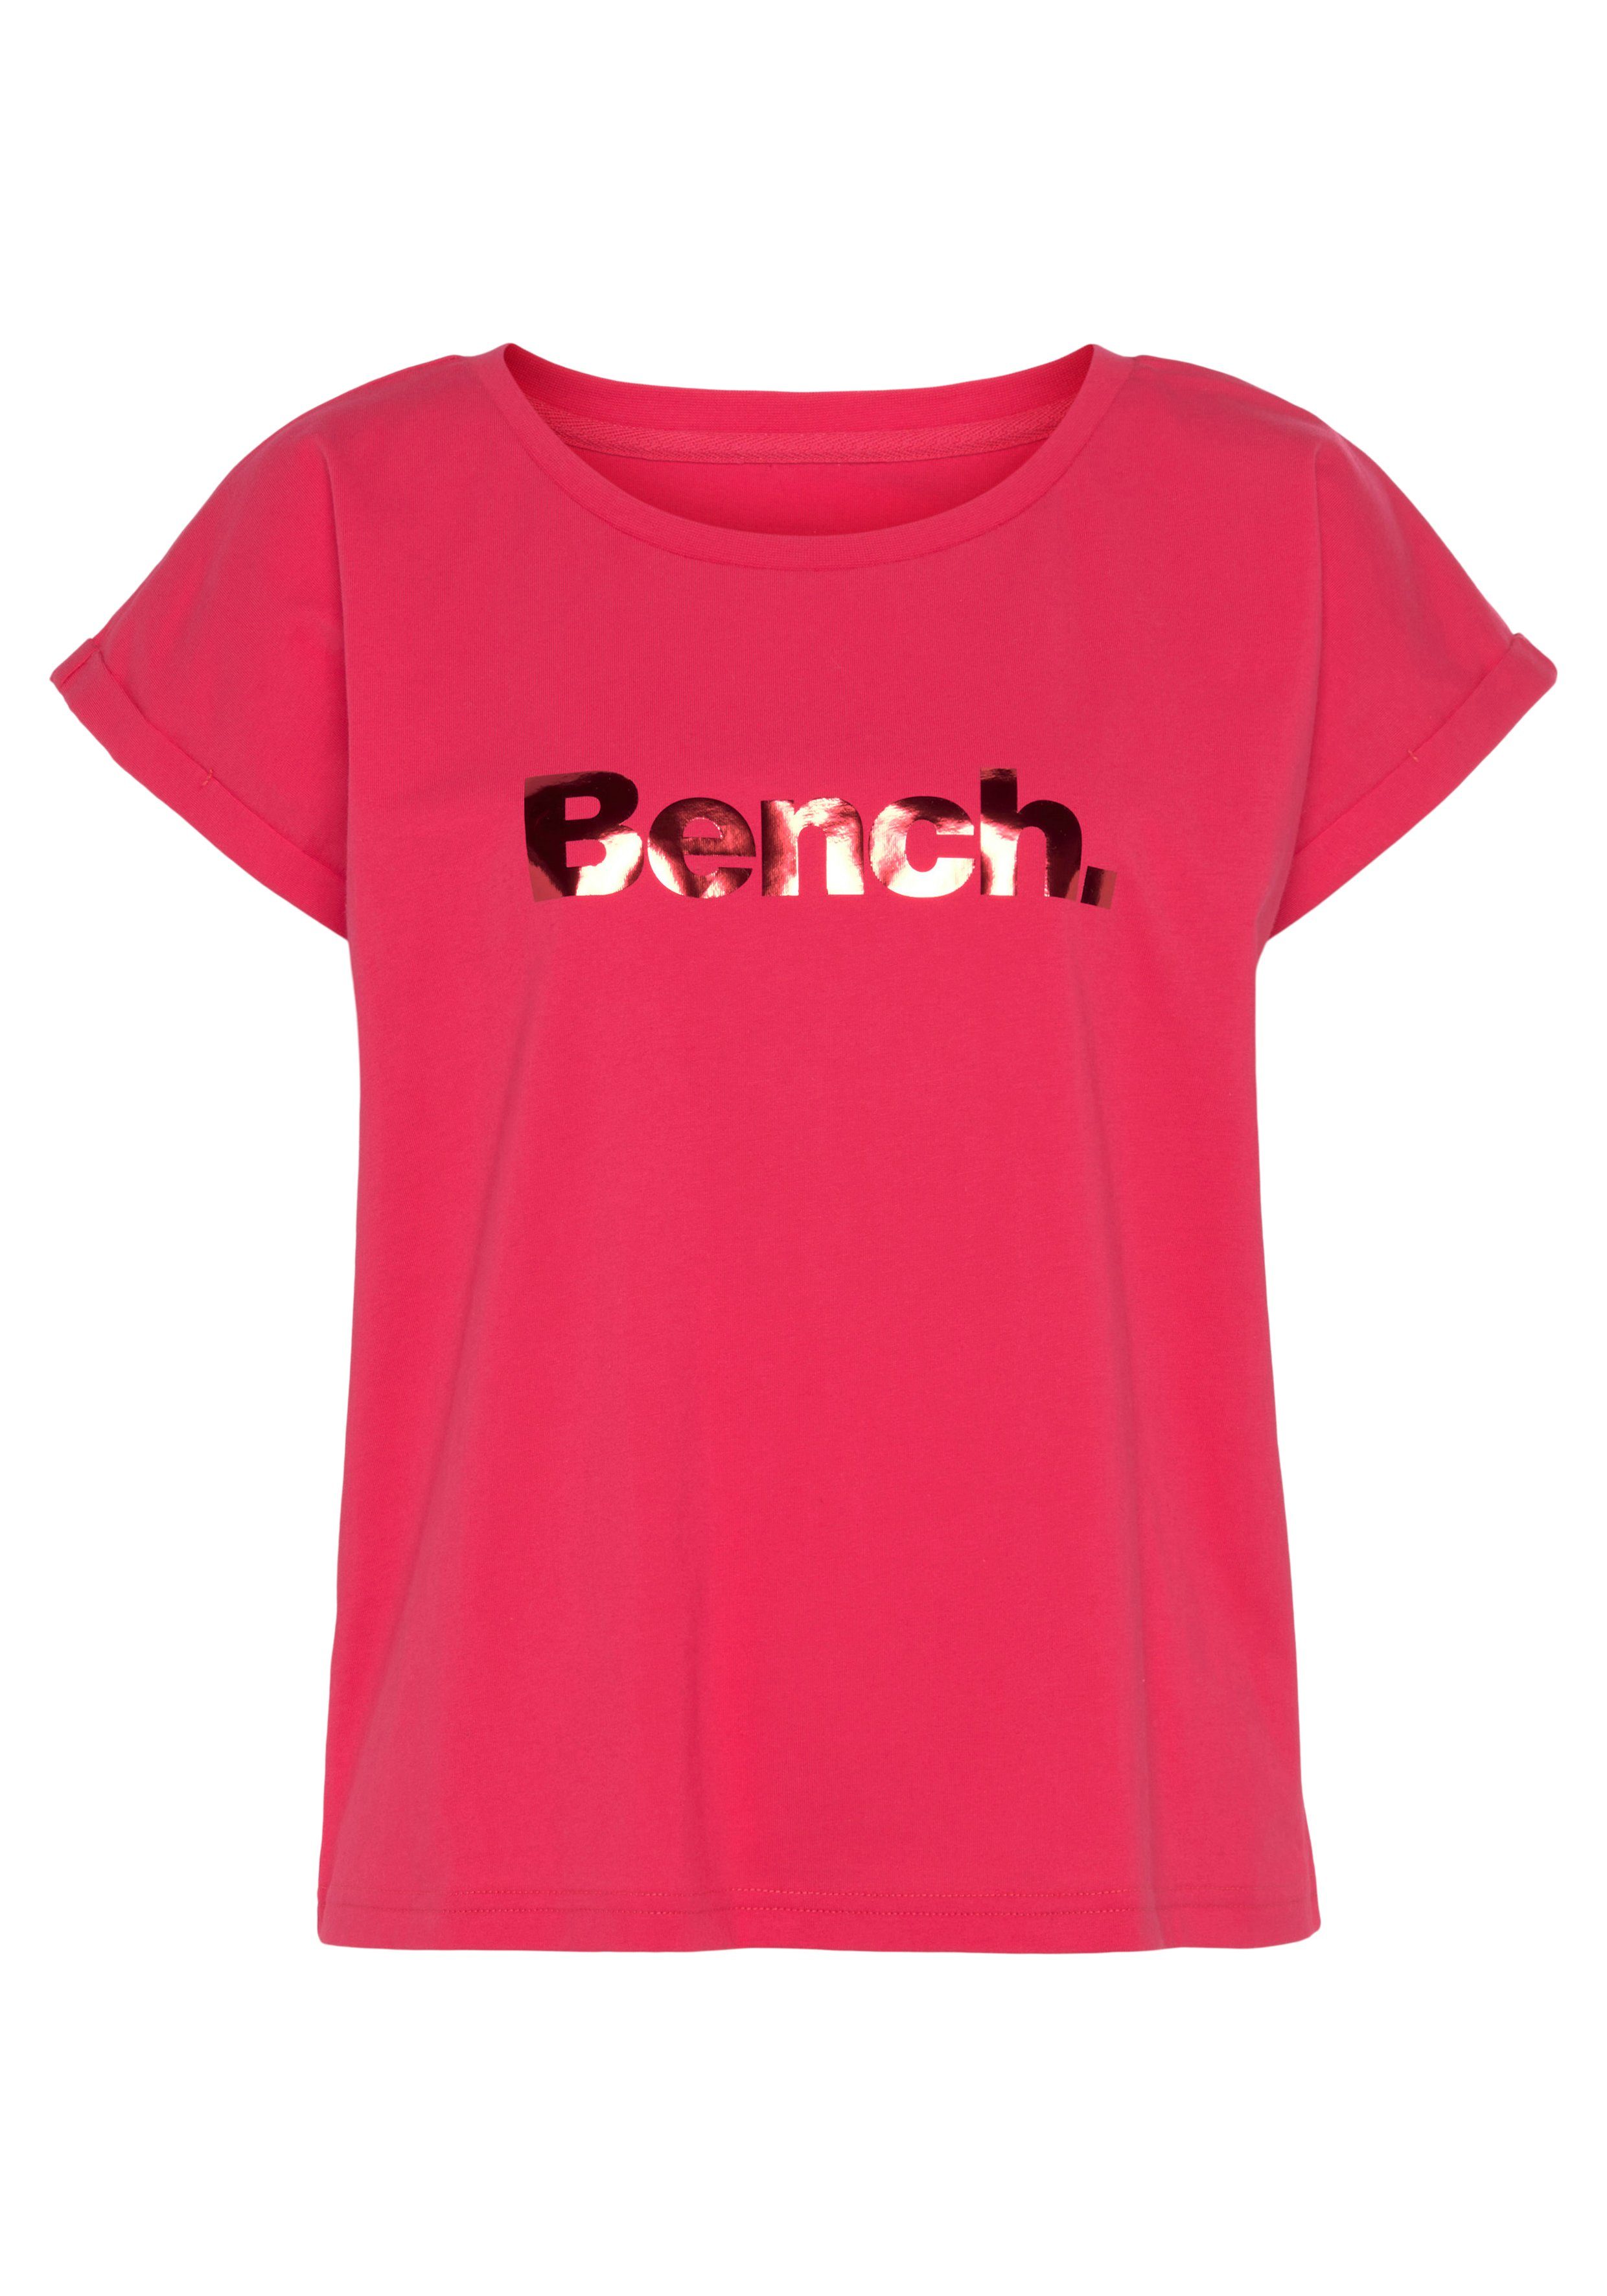 Bench. Loungewear T-Shirt -Kurzarmshirt, pink Loungewear Loungeshirt mit Logodruck, glänzendem